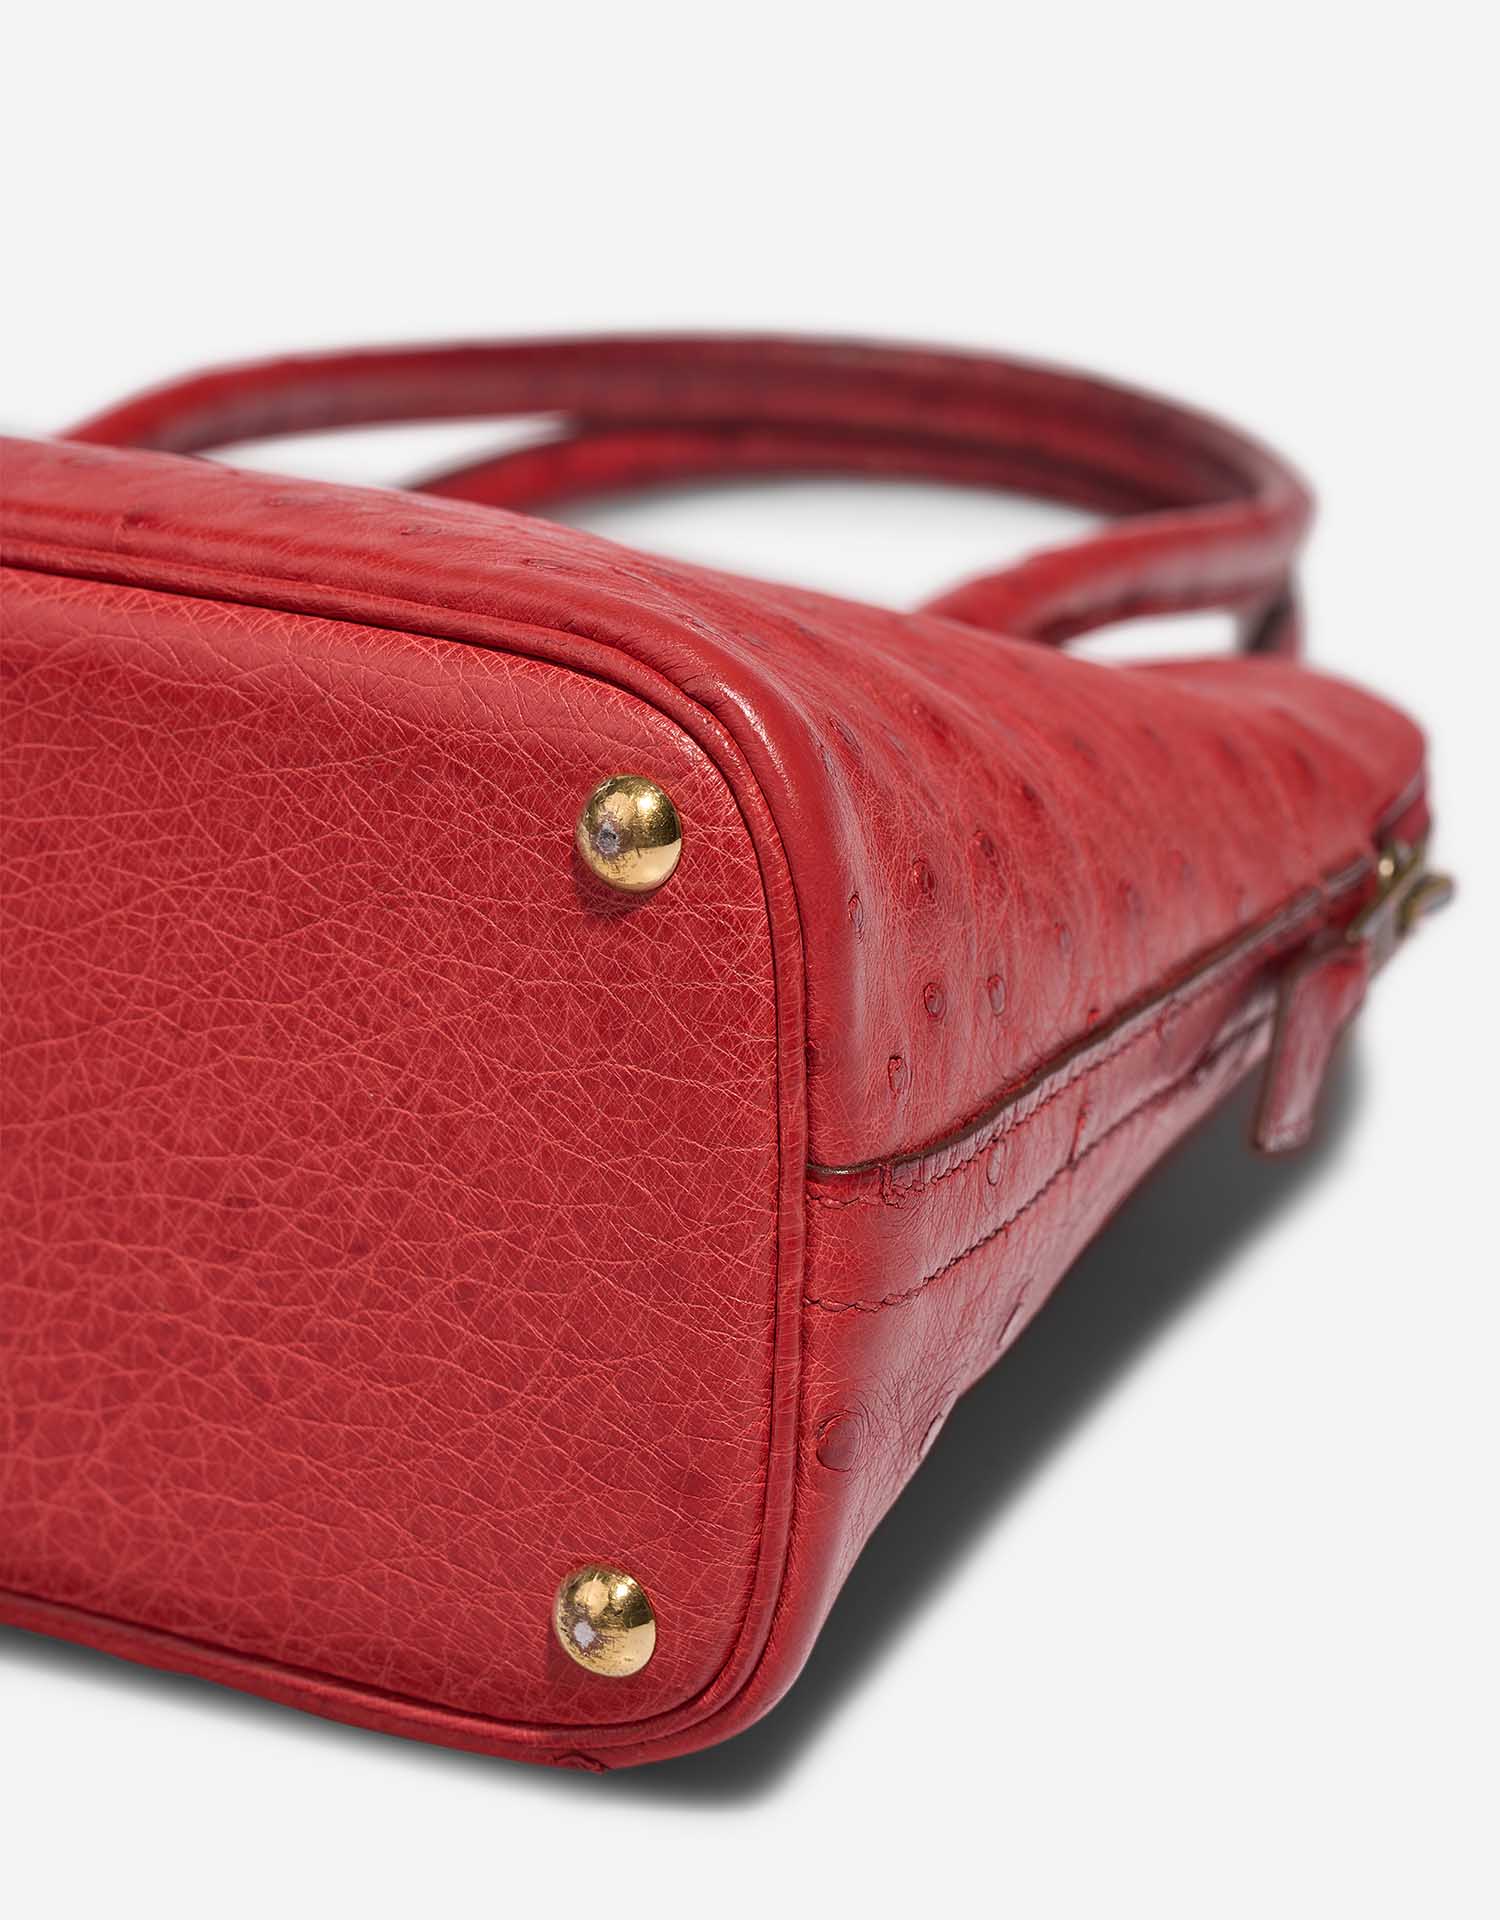 Hermès Bolide 27 RougeVif signes d'usure| Vendez votre sac de créateur sur Saclab.com